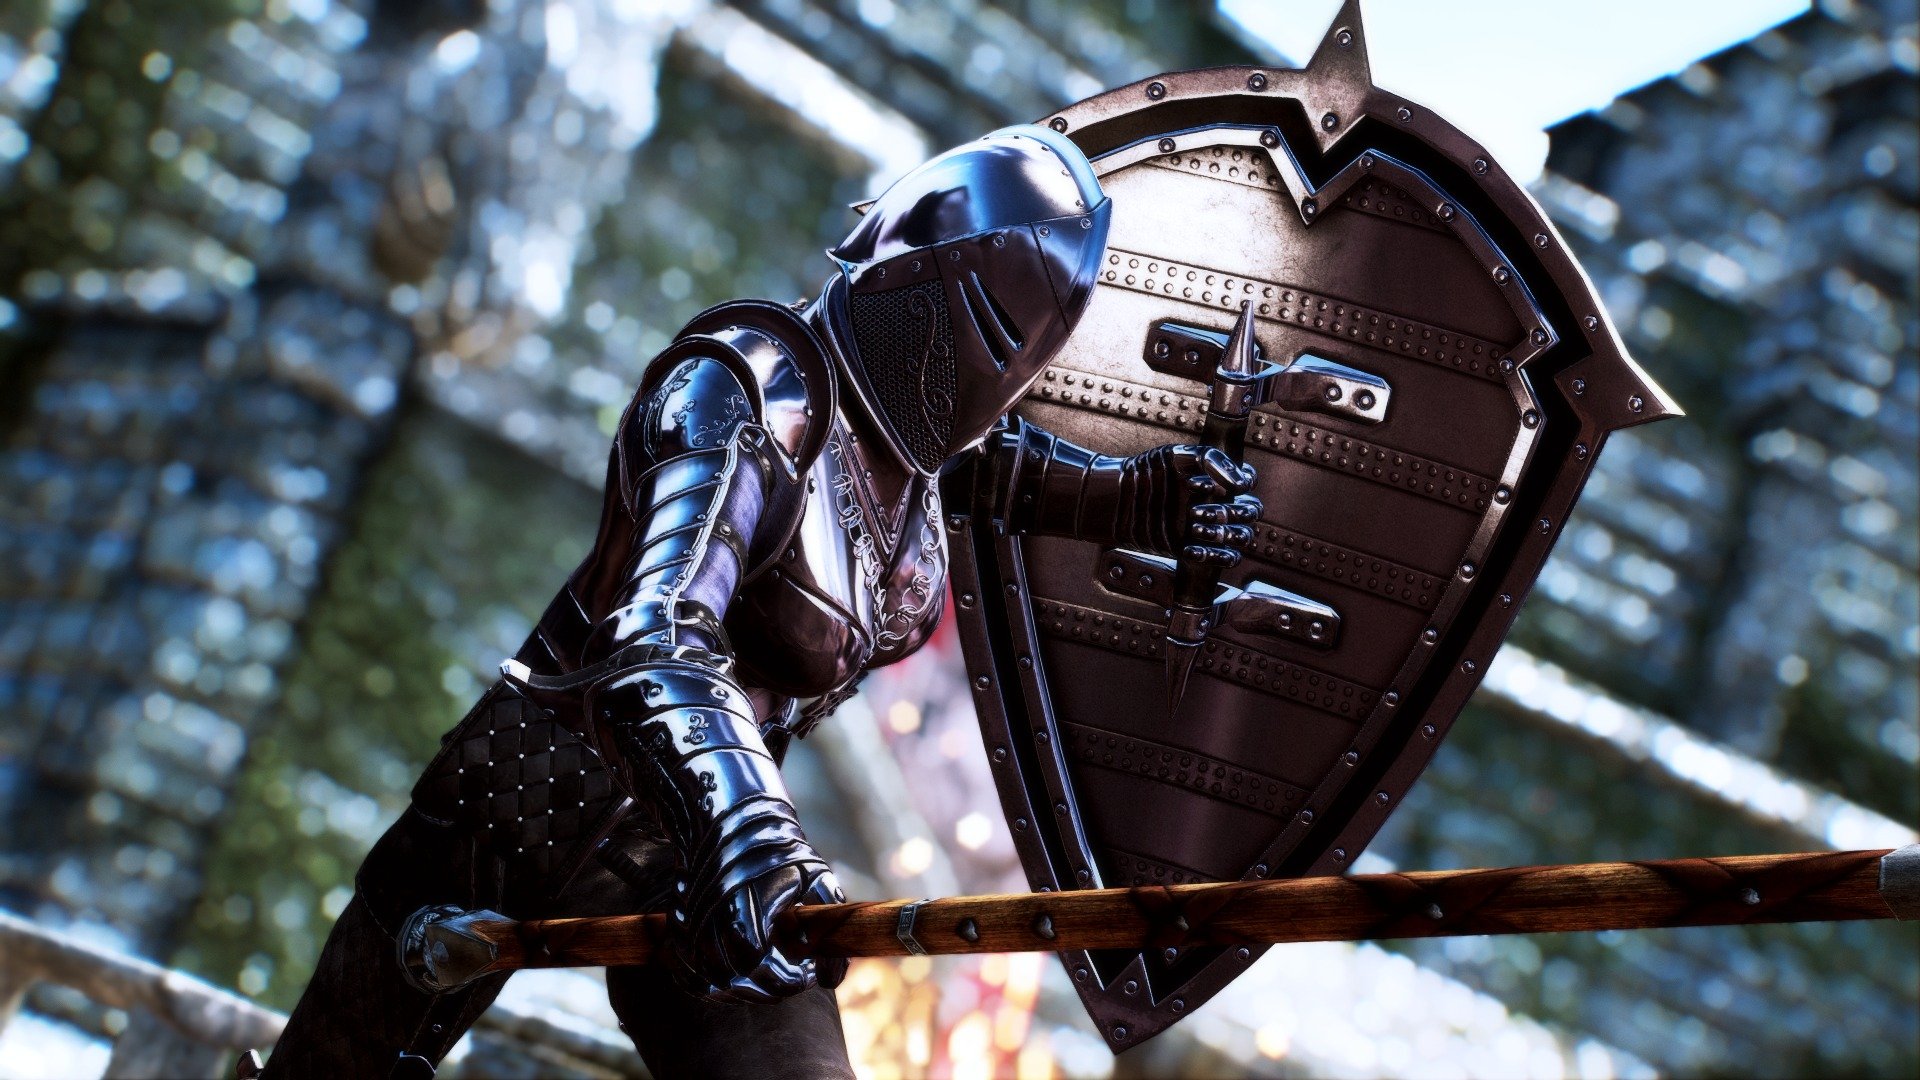 Shield knight. Skyrim DX Dark Knight Armor. Кнайт щит. Рыцарь в доспехах со щитом. Щит рыцаря.